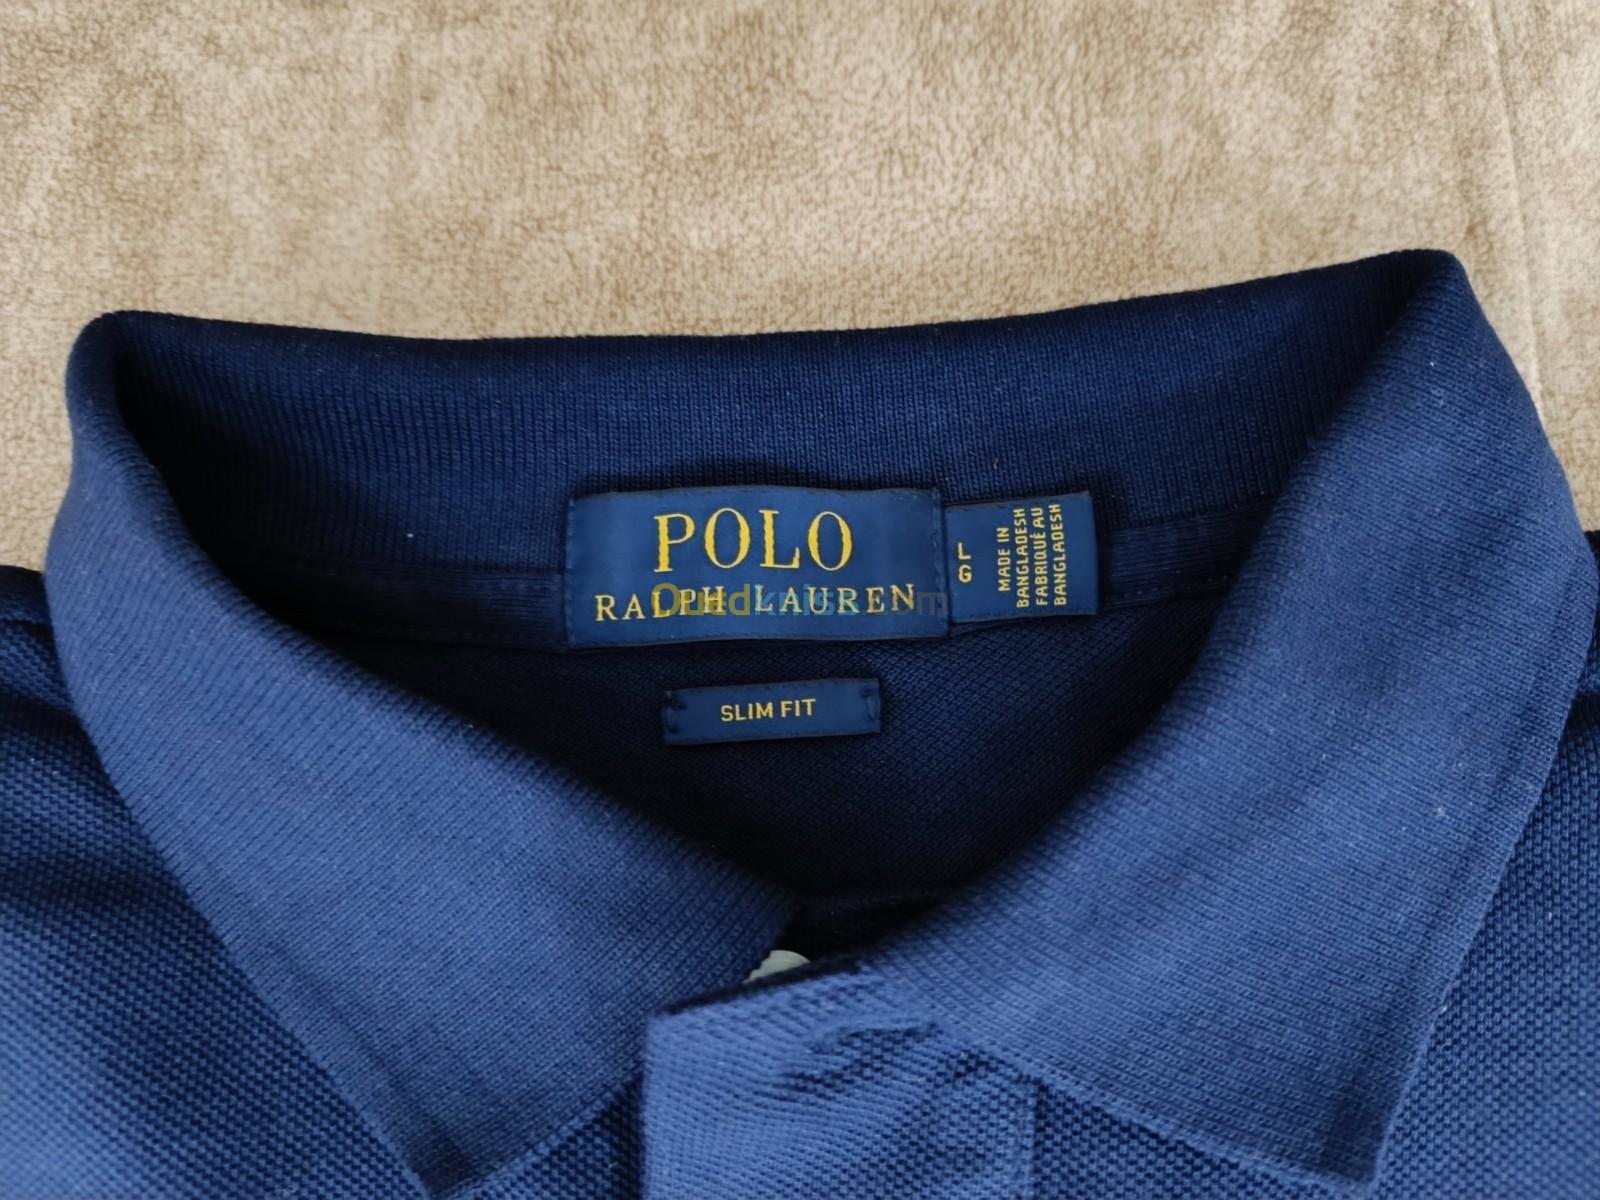 Polo Ralph Lauren blue navy 